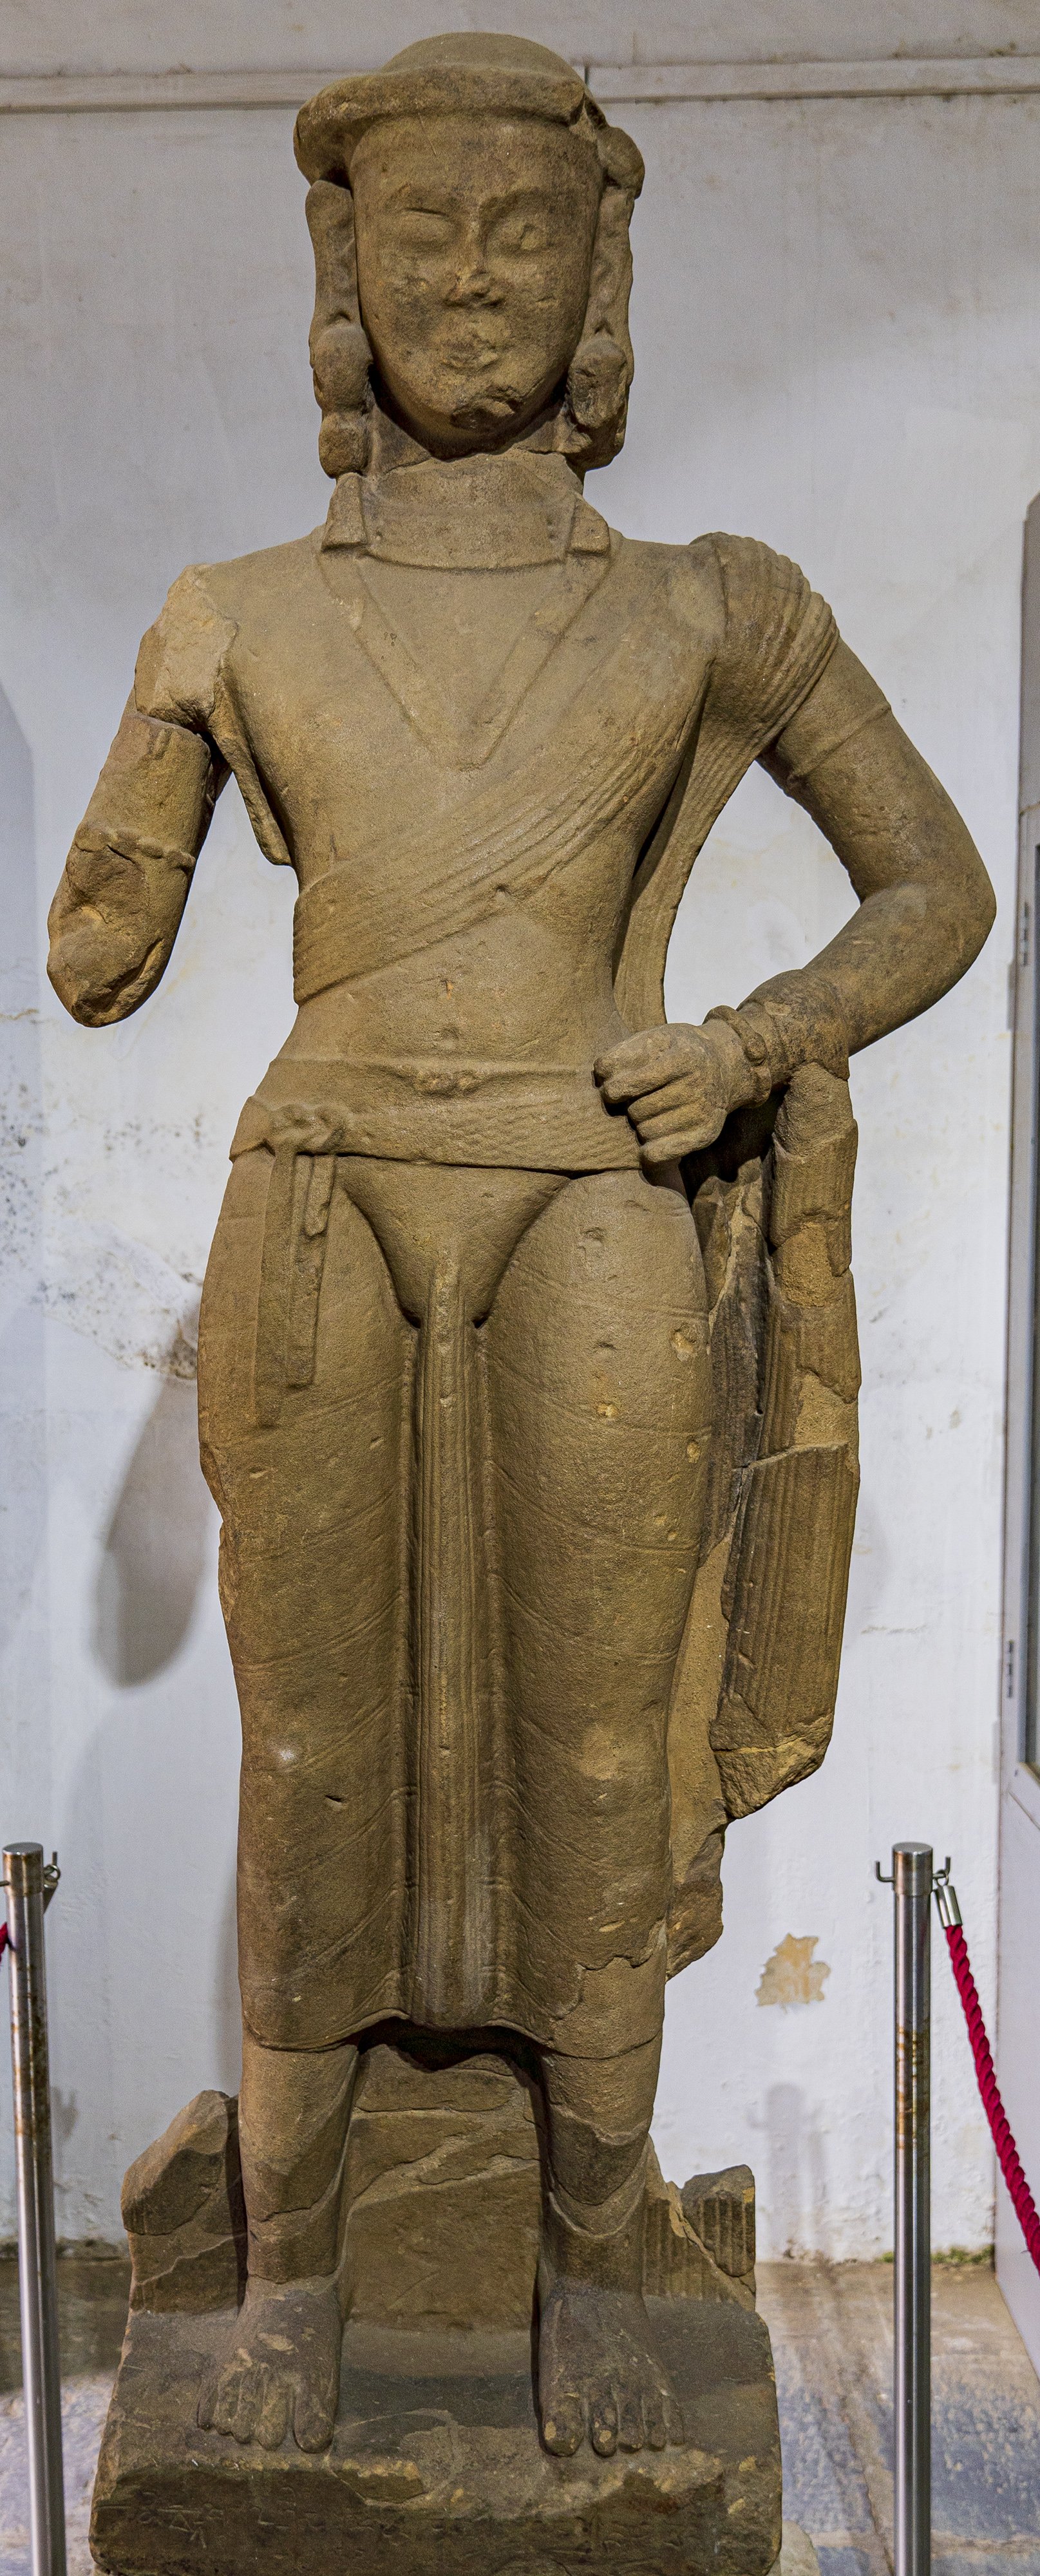 King Jayavarma (Jayavarman)